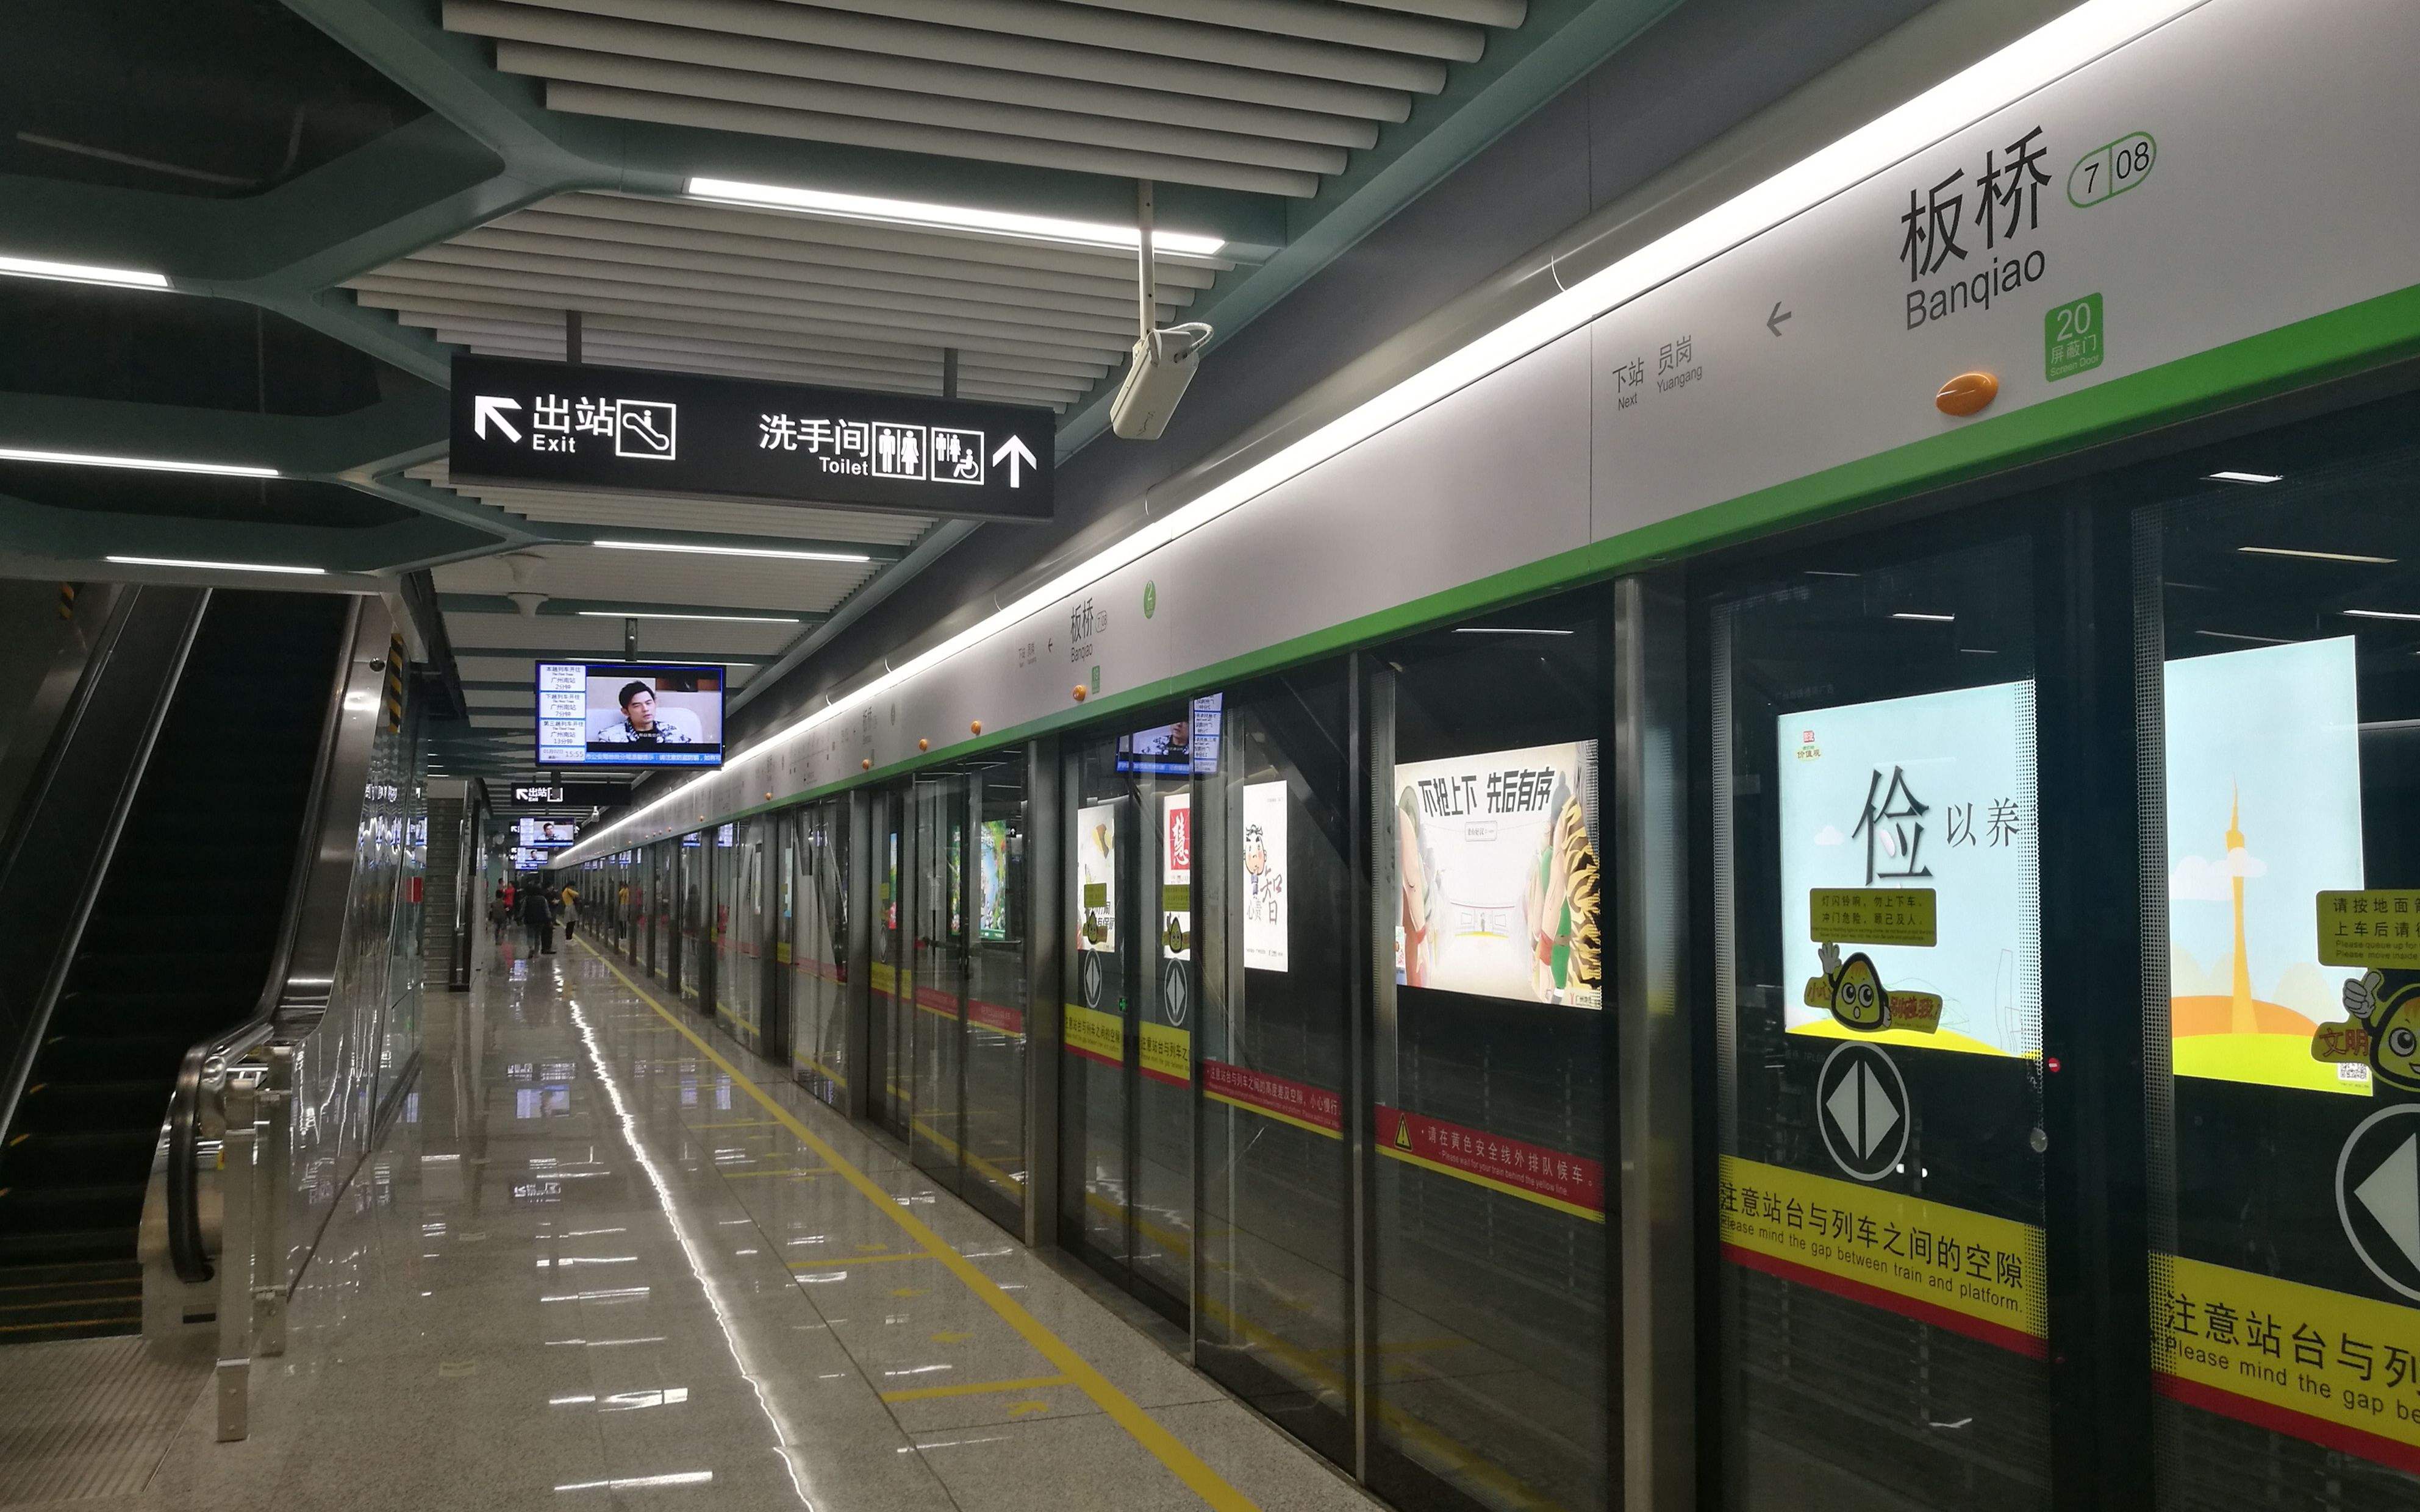 2020广州地铁超清图片